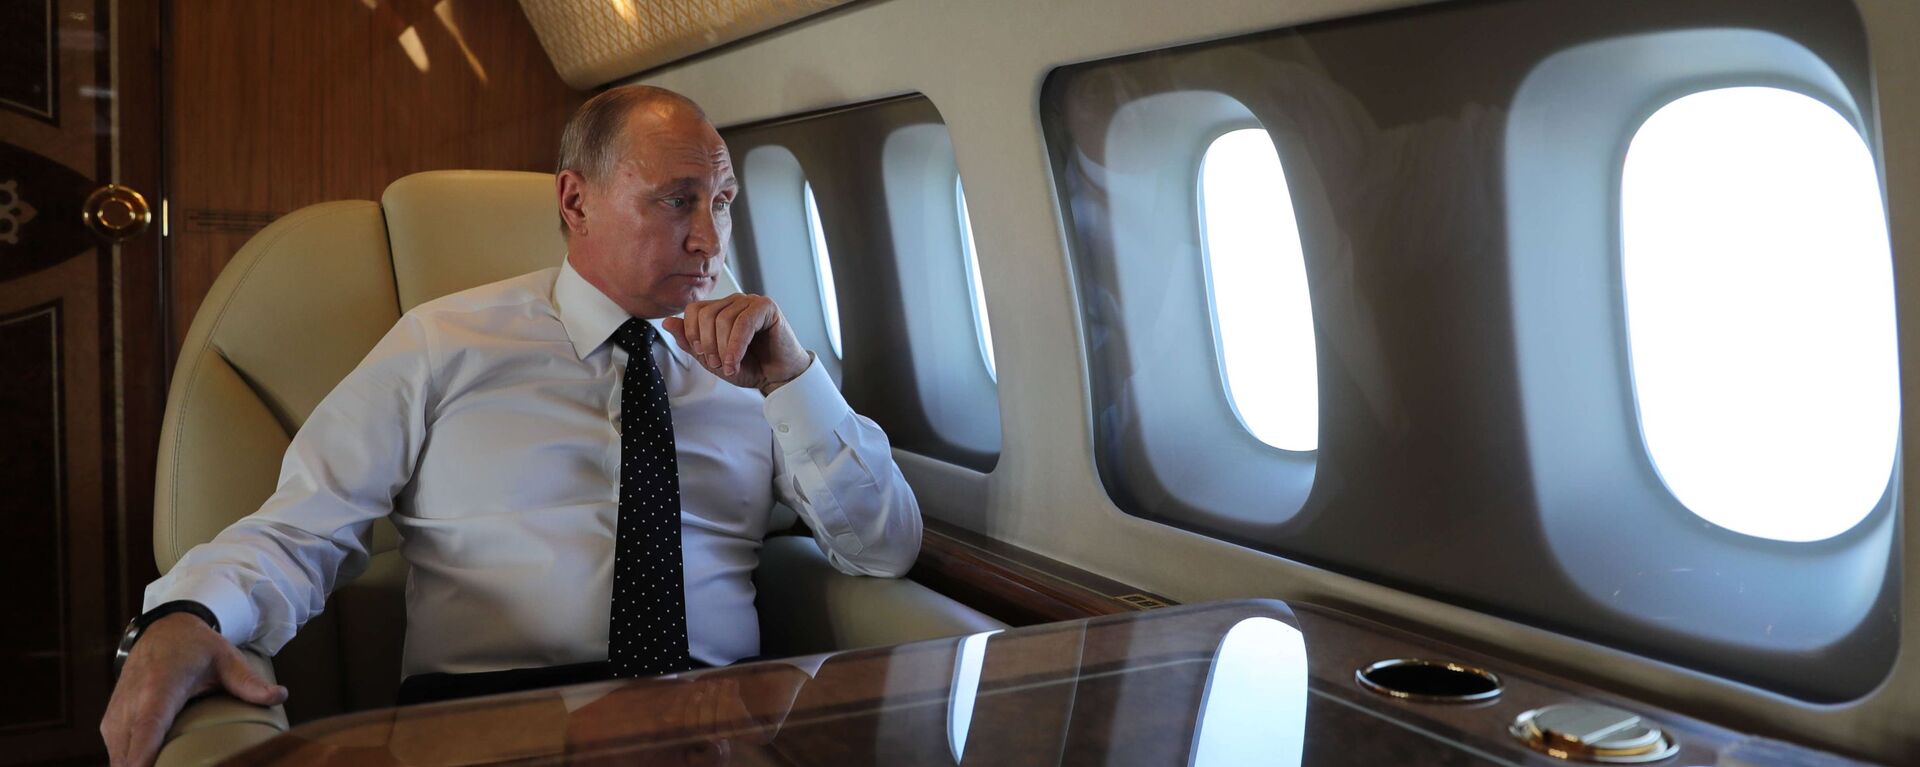 Владимир Путин у авиону - Sputnik Србија, 1920, 11.06.2021